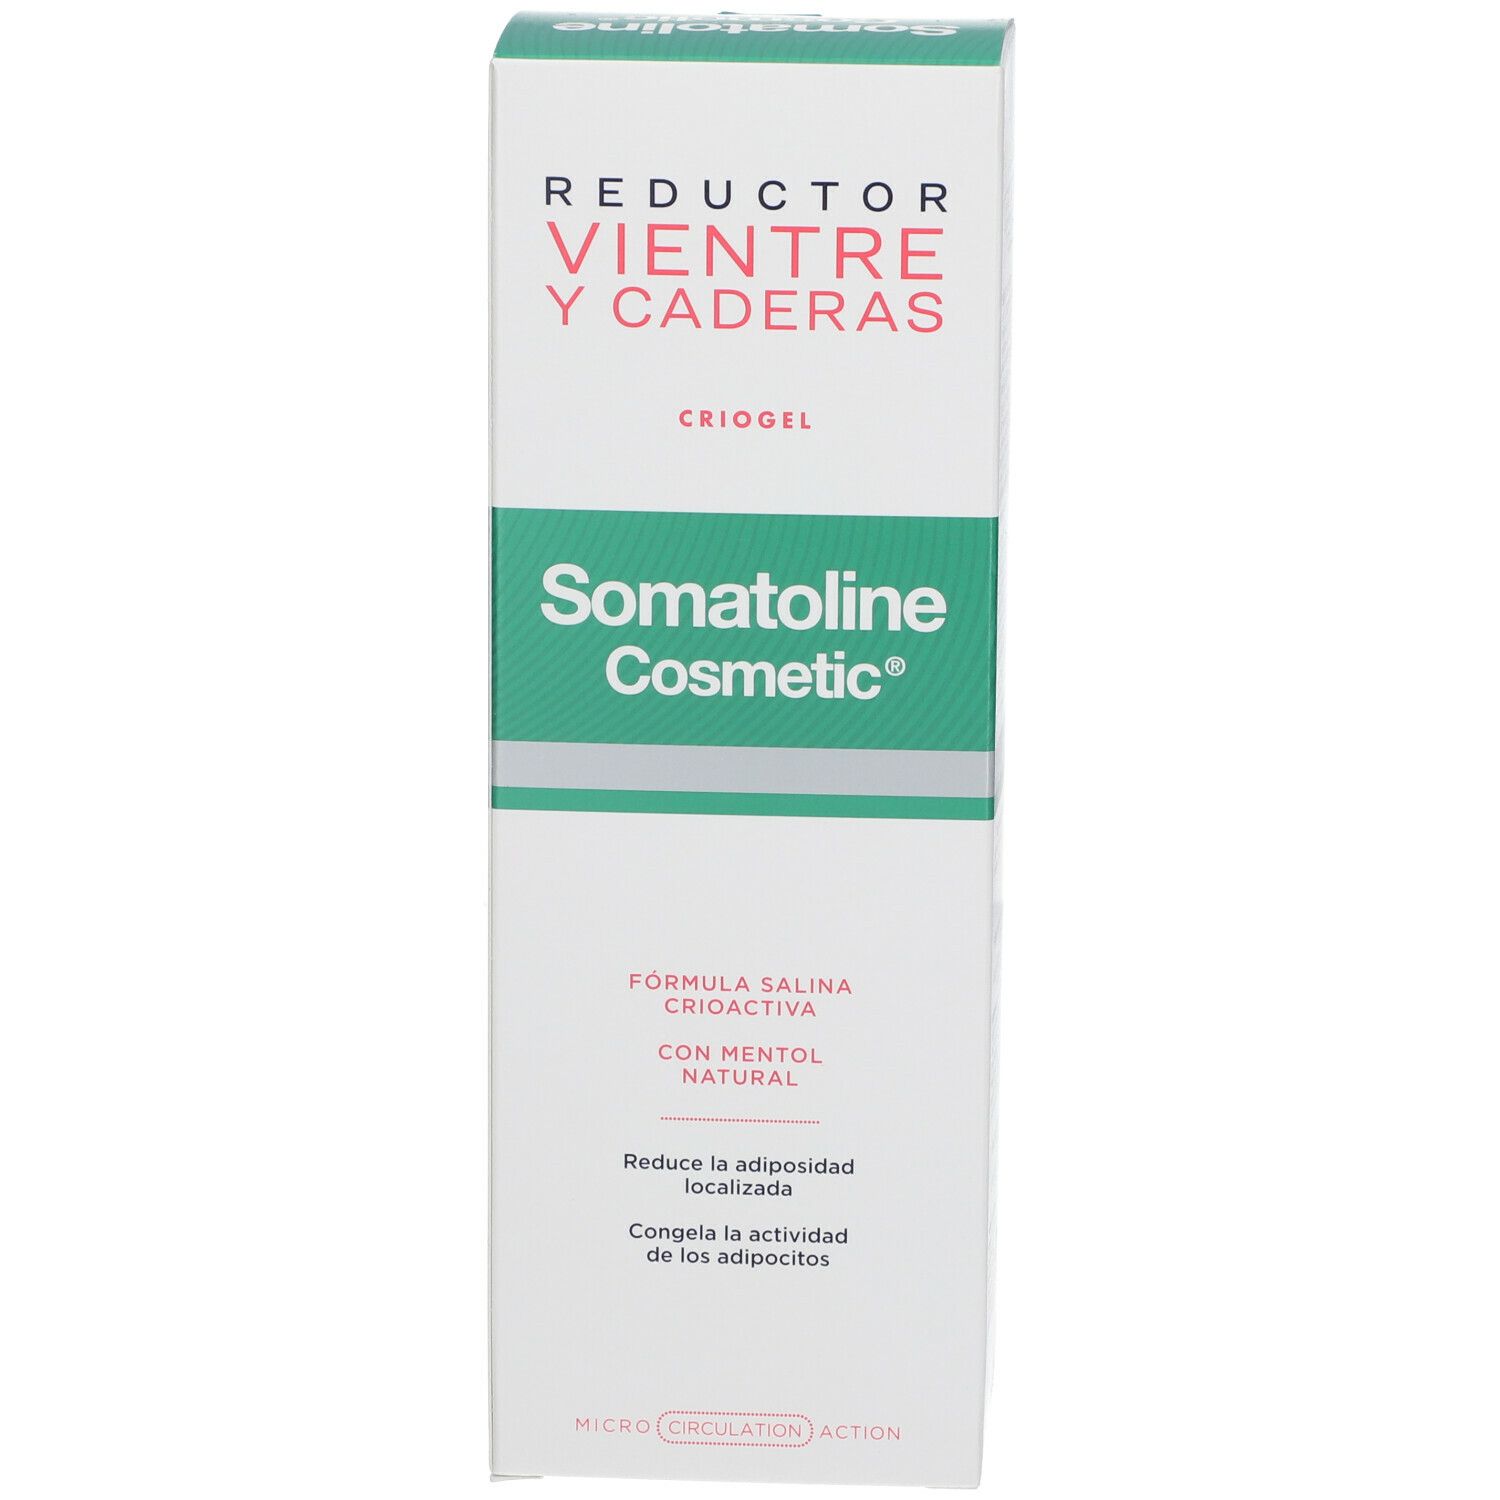 Somatoline Cosmetic® Bauch und Hüften